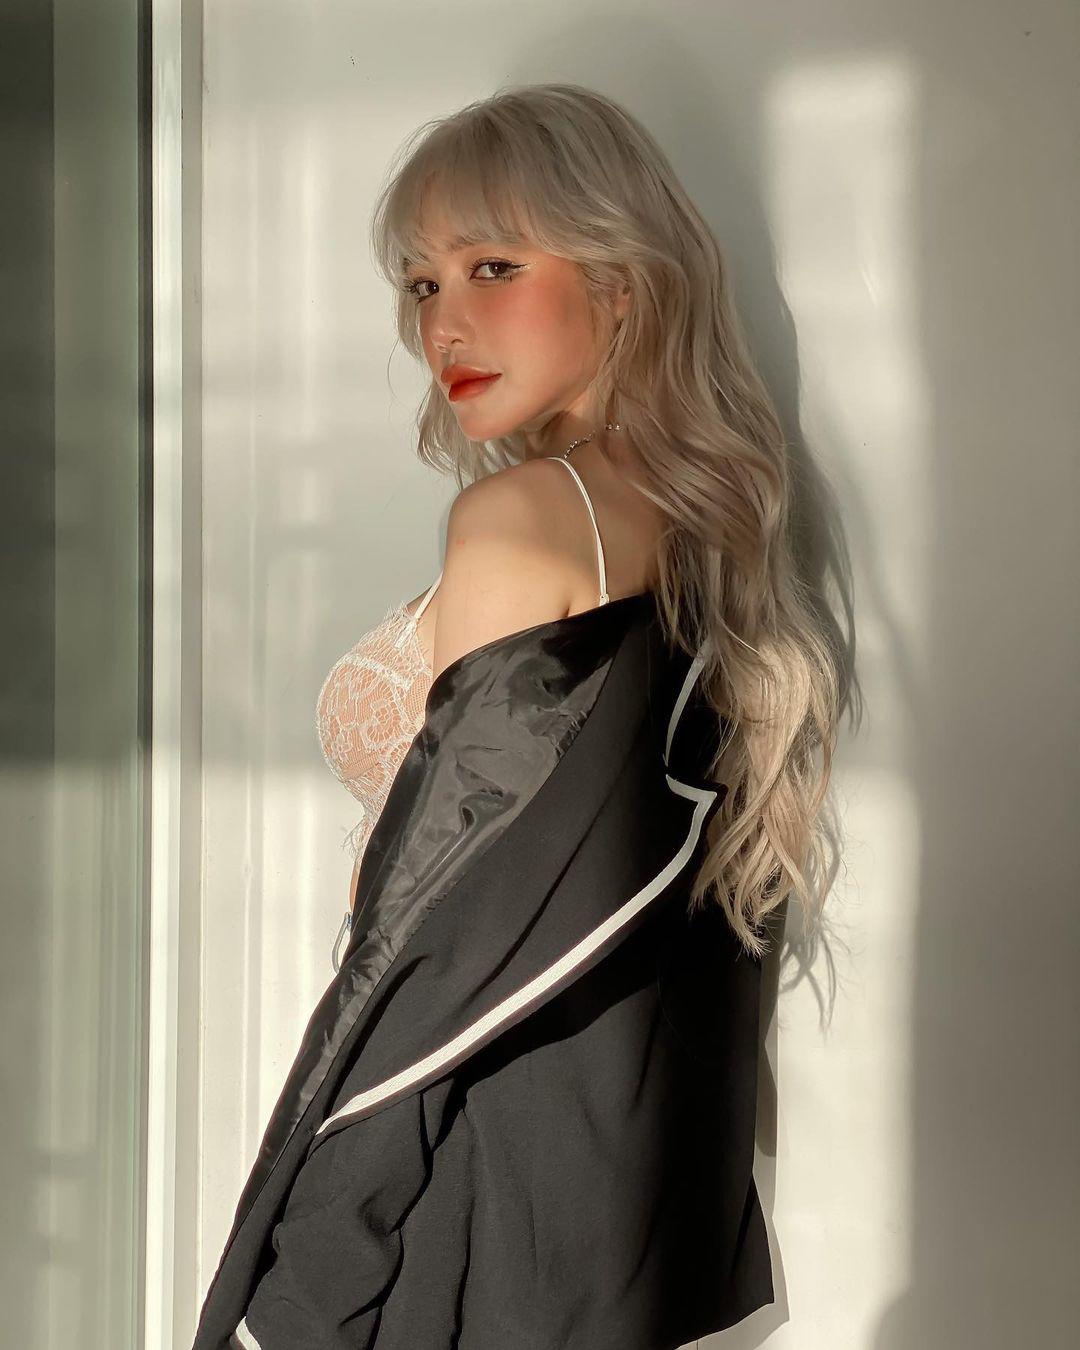 Elly Trần đổi màu tóc trắng, style thời trang từ dịu dàng tiên tử hóa bad girl cool ngầu - 5